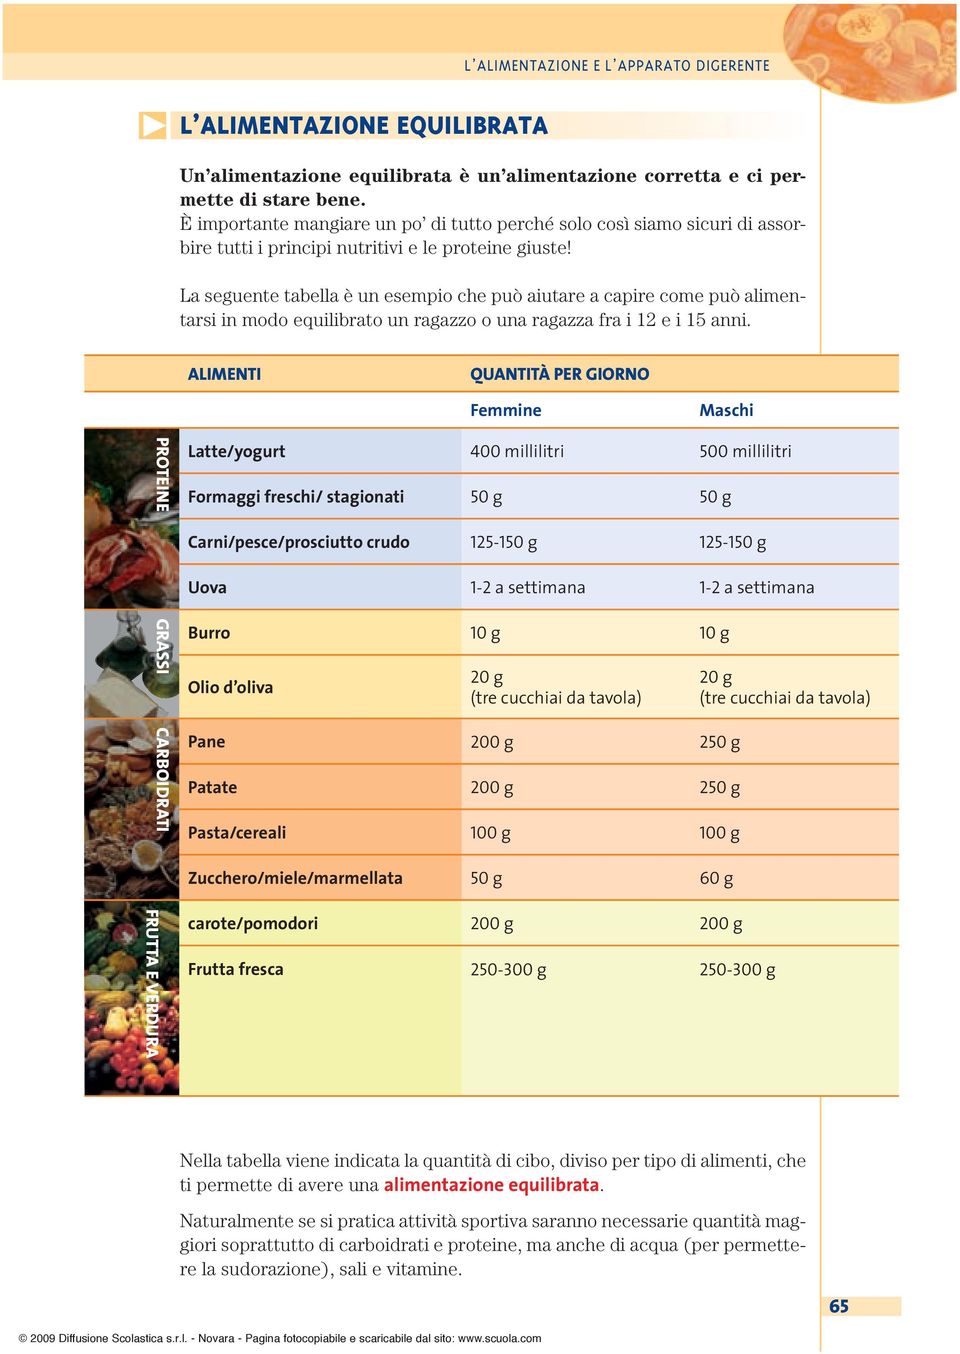 La seguente tabella è un esempio che può aiutare a capire come può alimentarsi in modo equilibrato un ragazzo o una ragazza fra i 12 e i 15 anni.